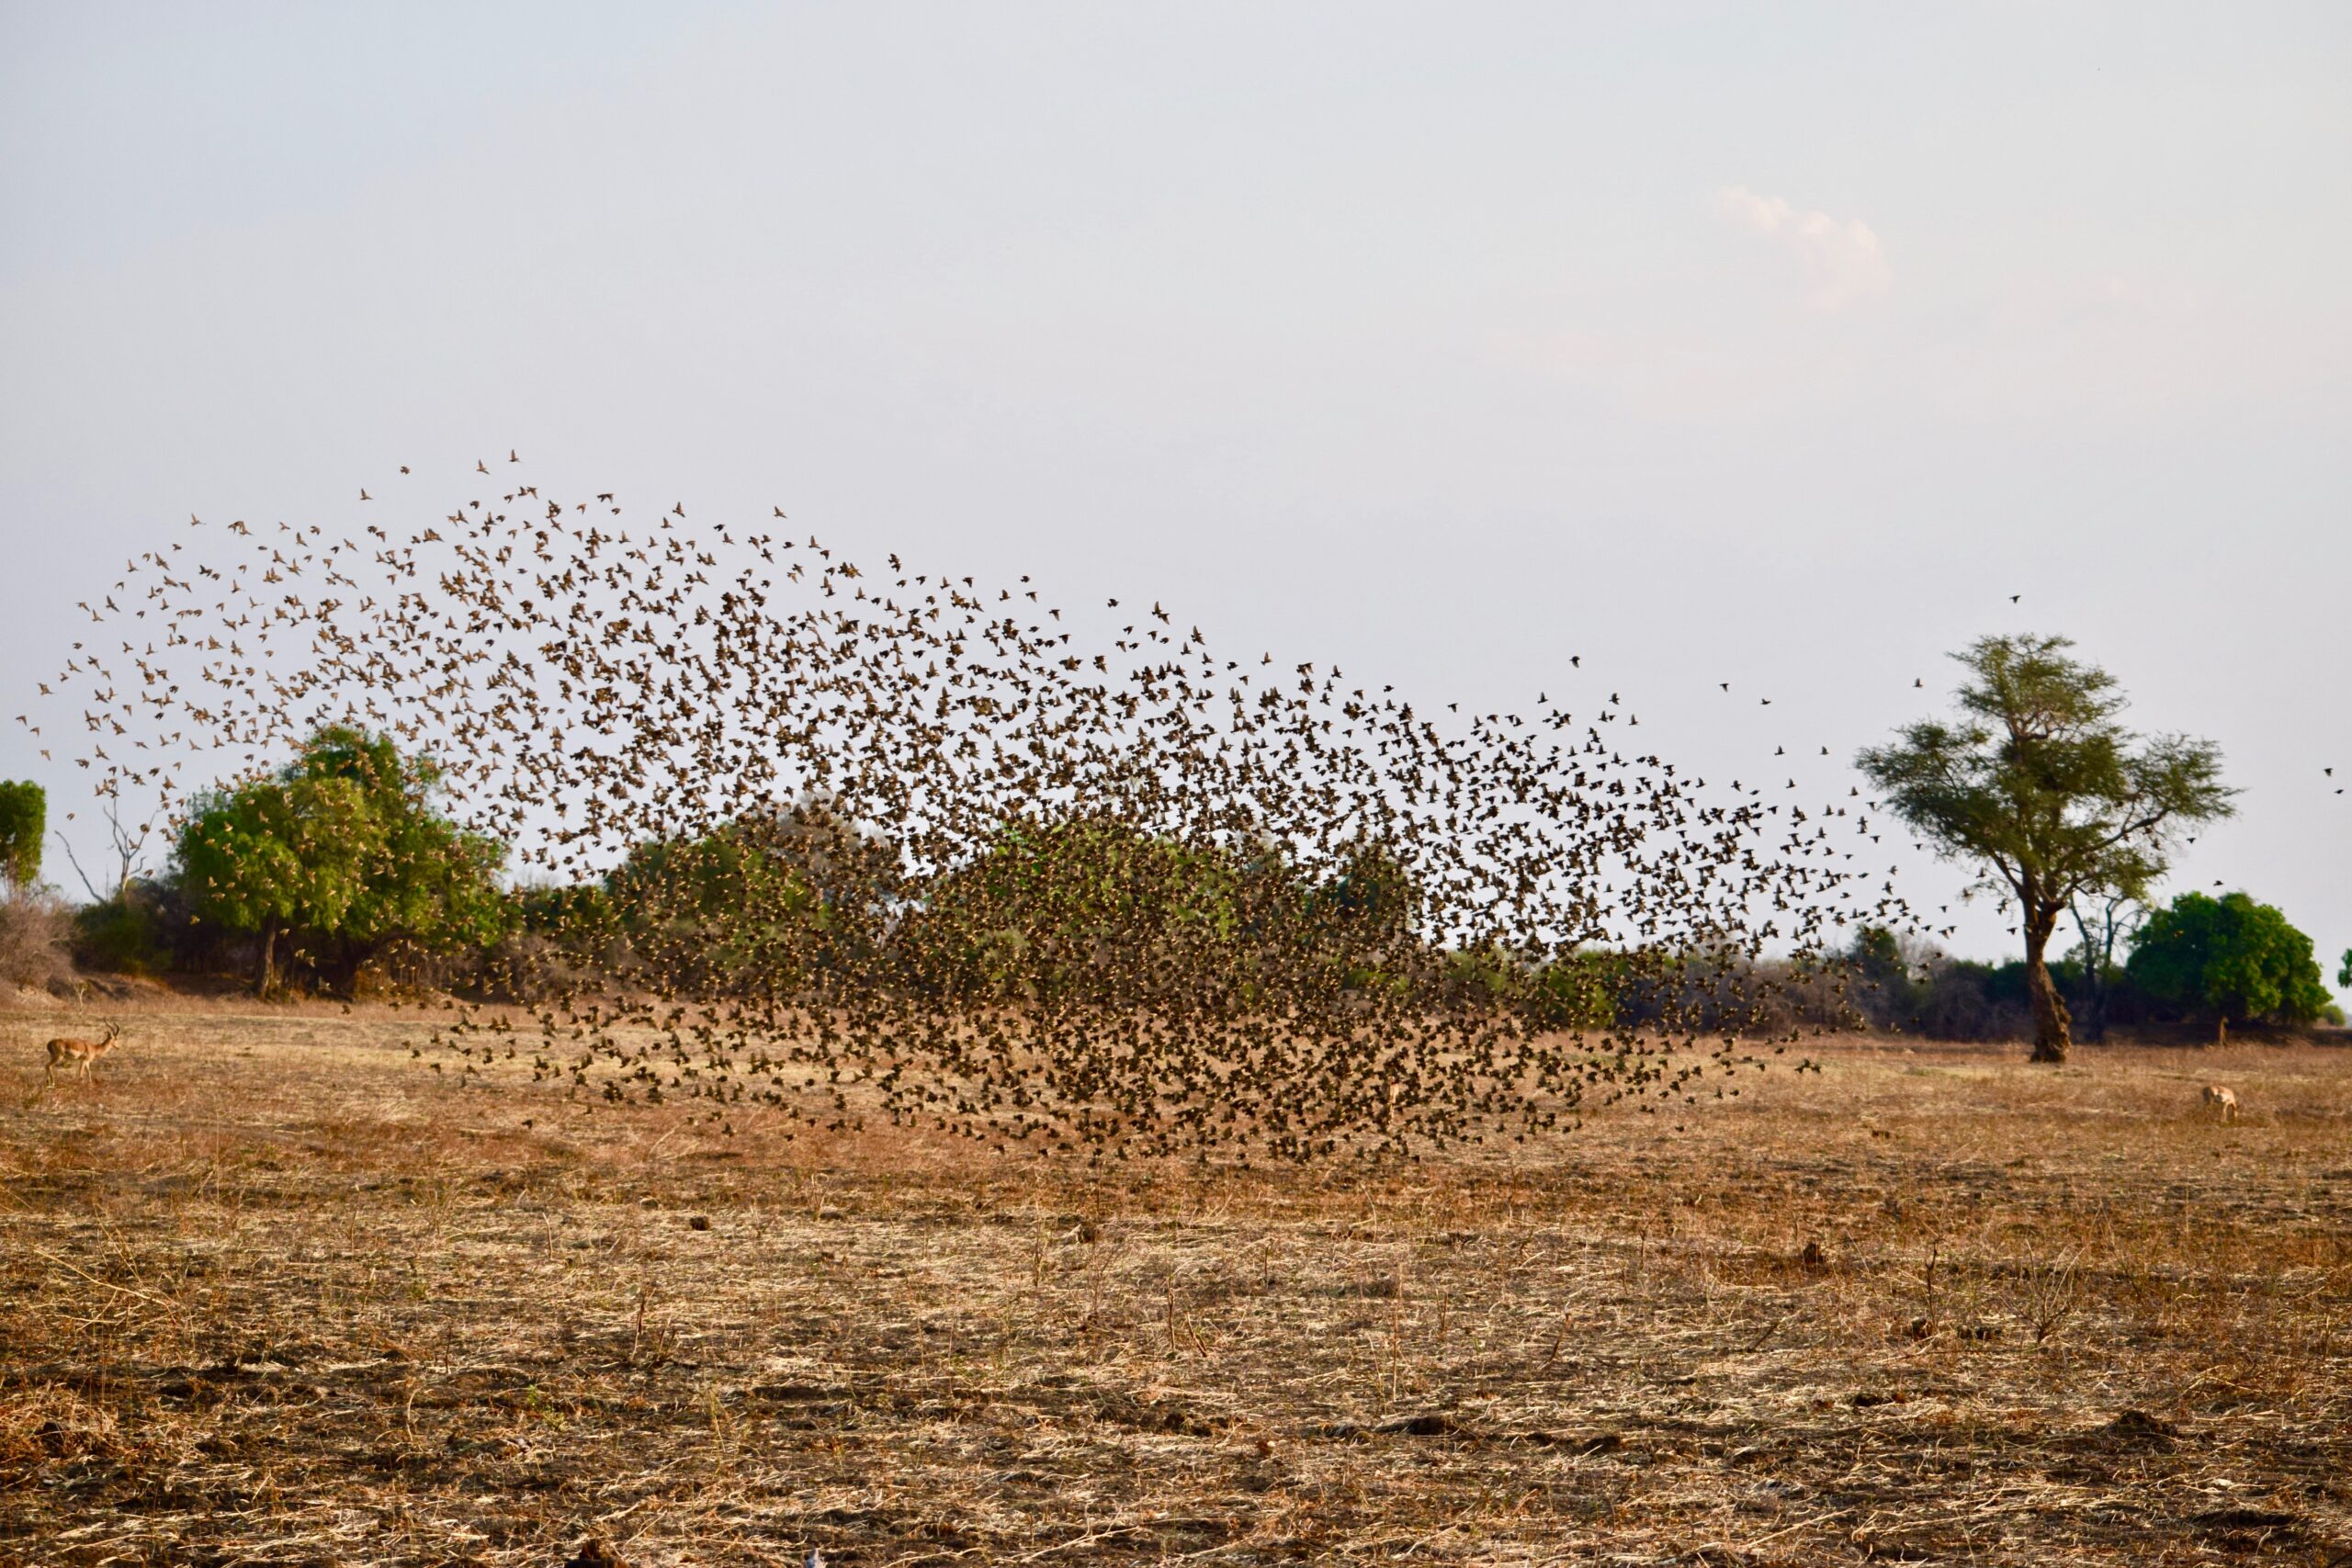 Flock of birds taking flight